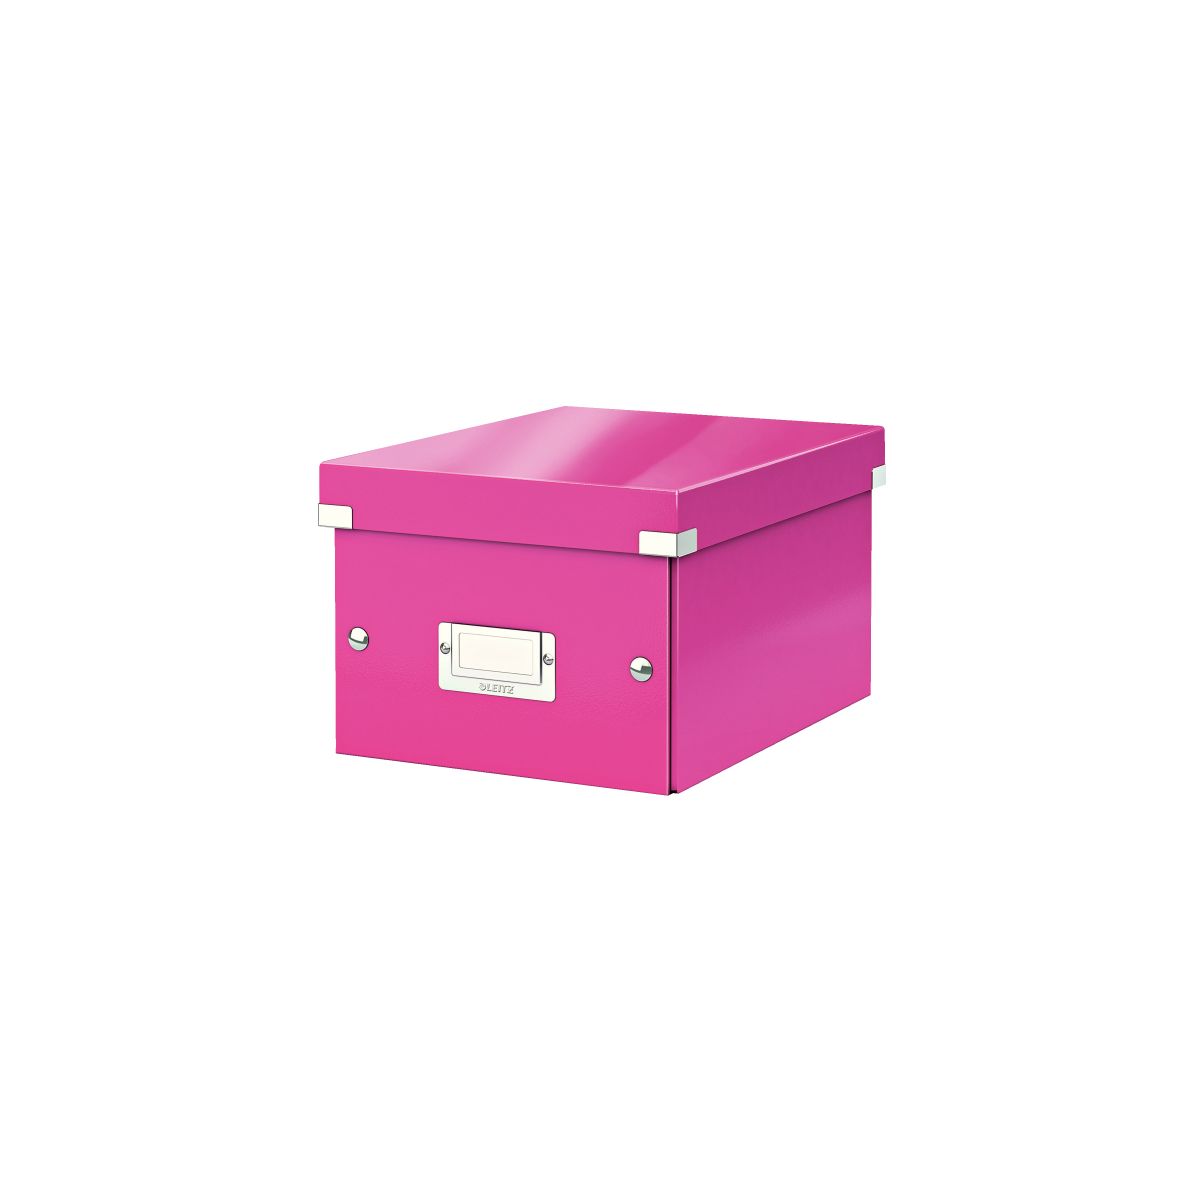 Pudło archiwizacyjne Click & Store A5 różowy karton [mm:] 216x160x 282 Leitz (60430023)